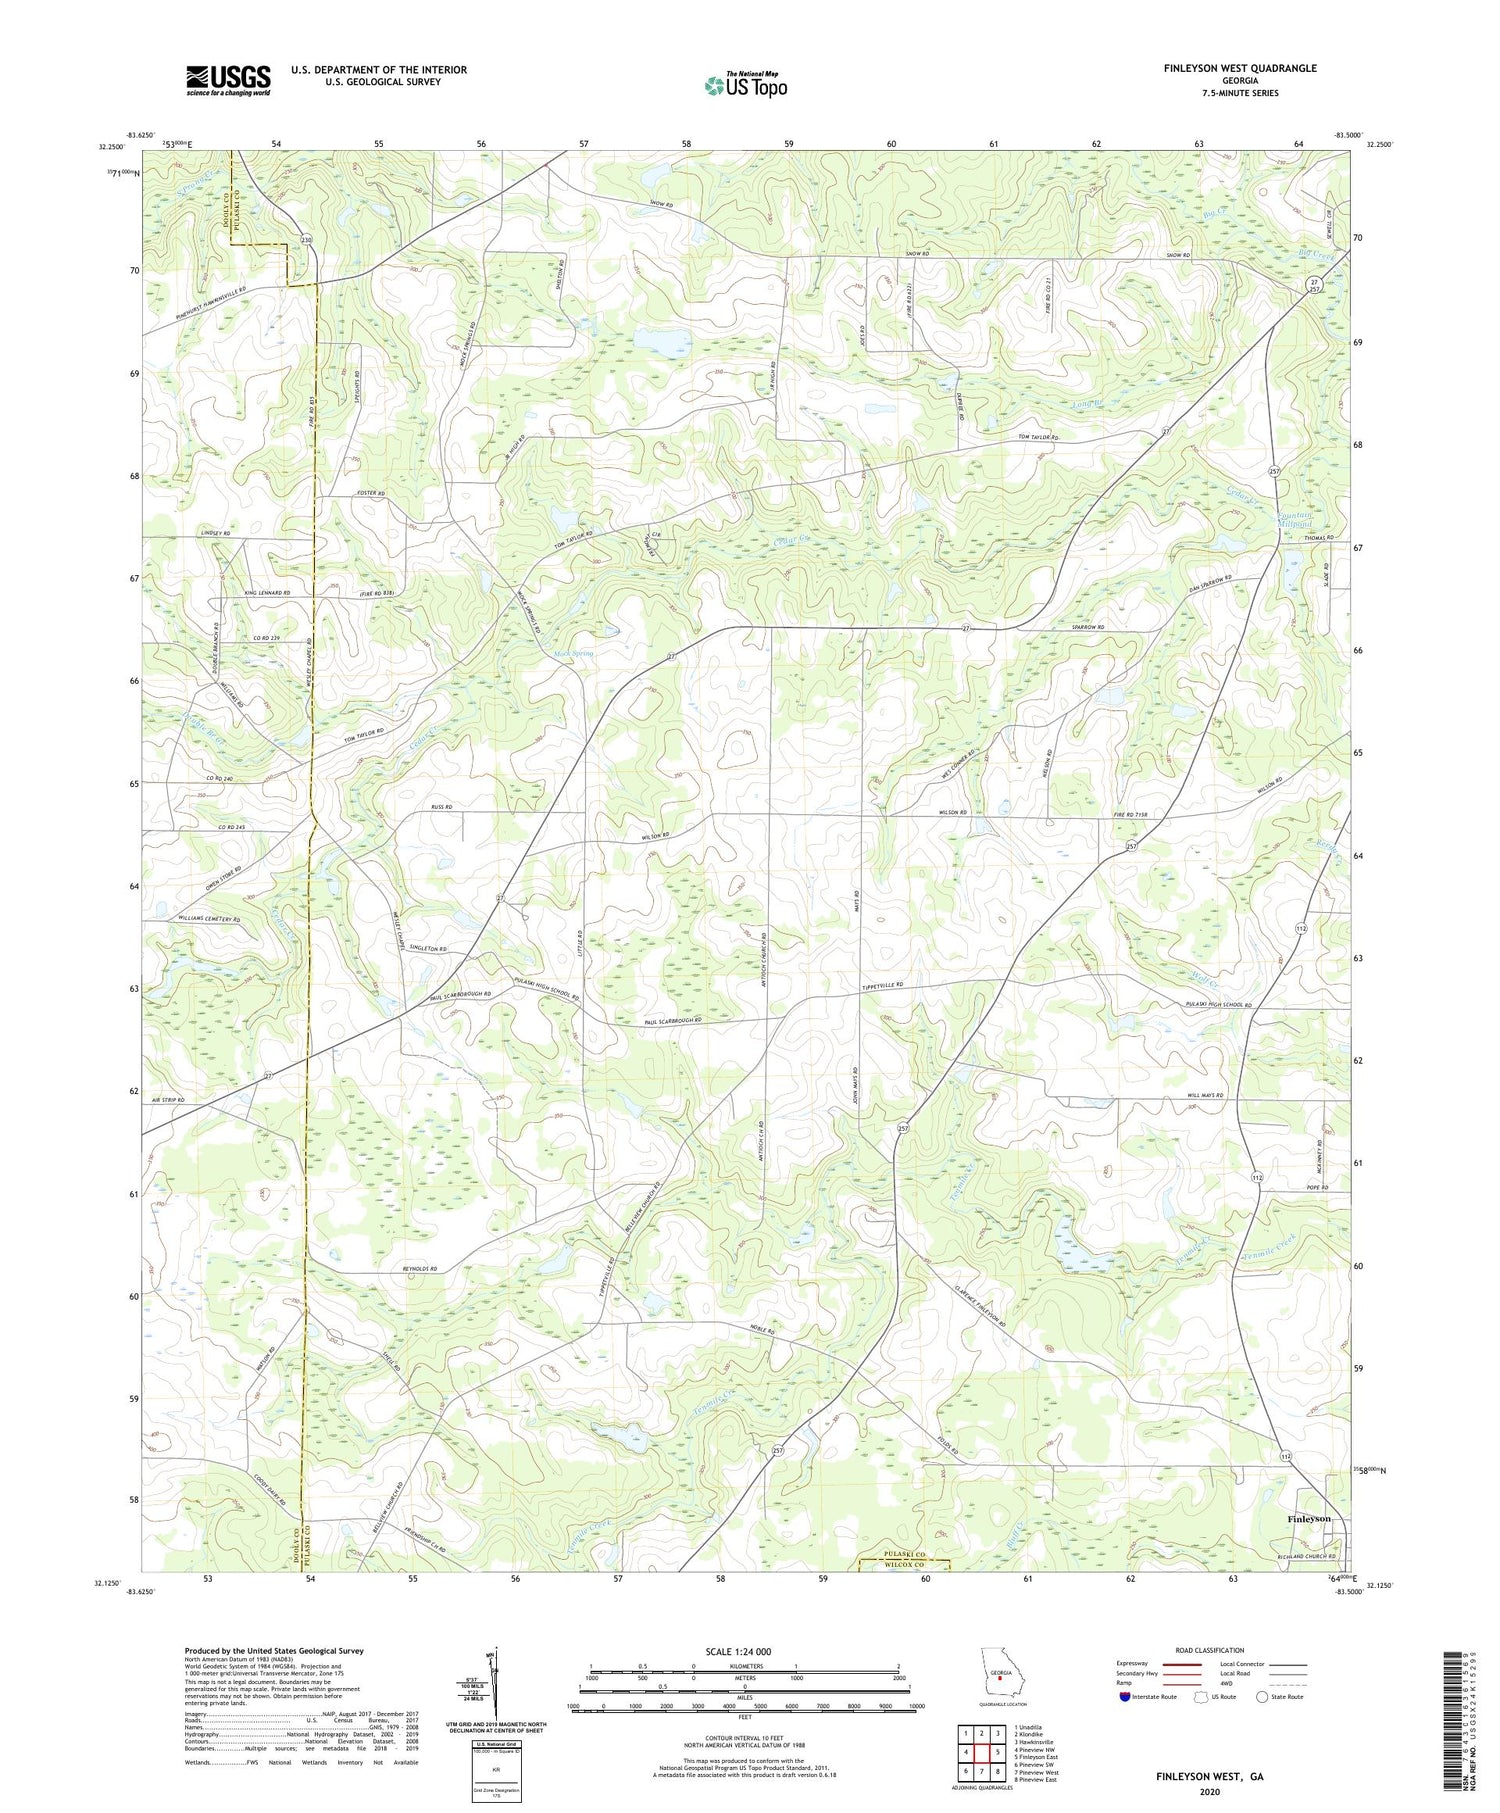 Finleyson West Georgia US Topo Map Image